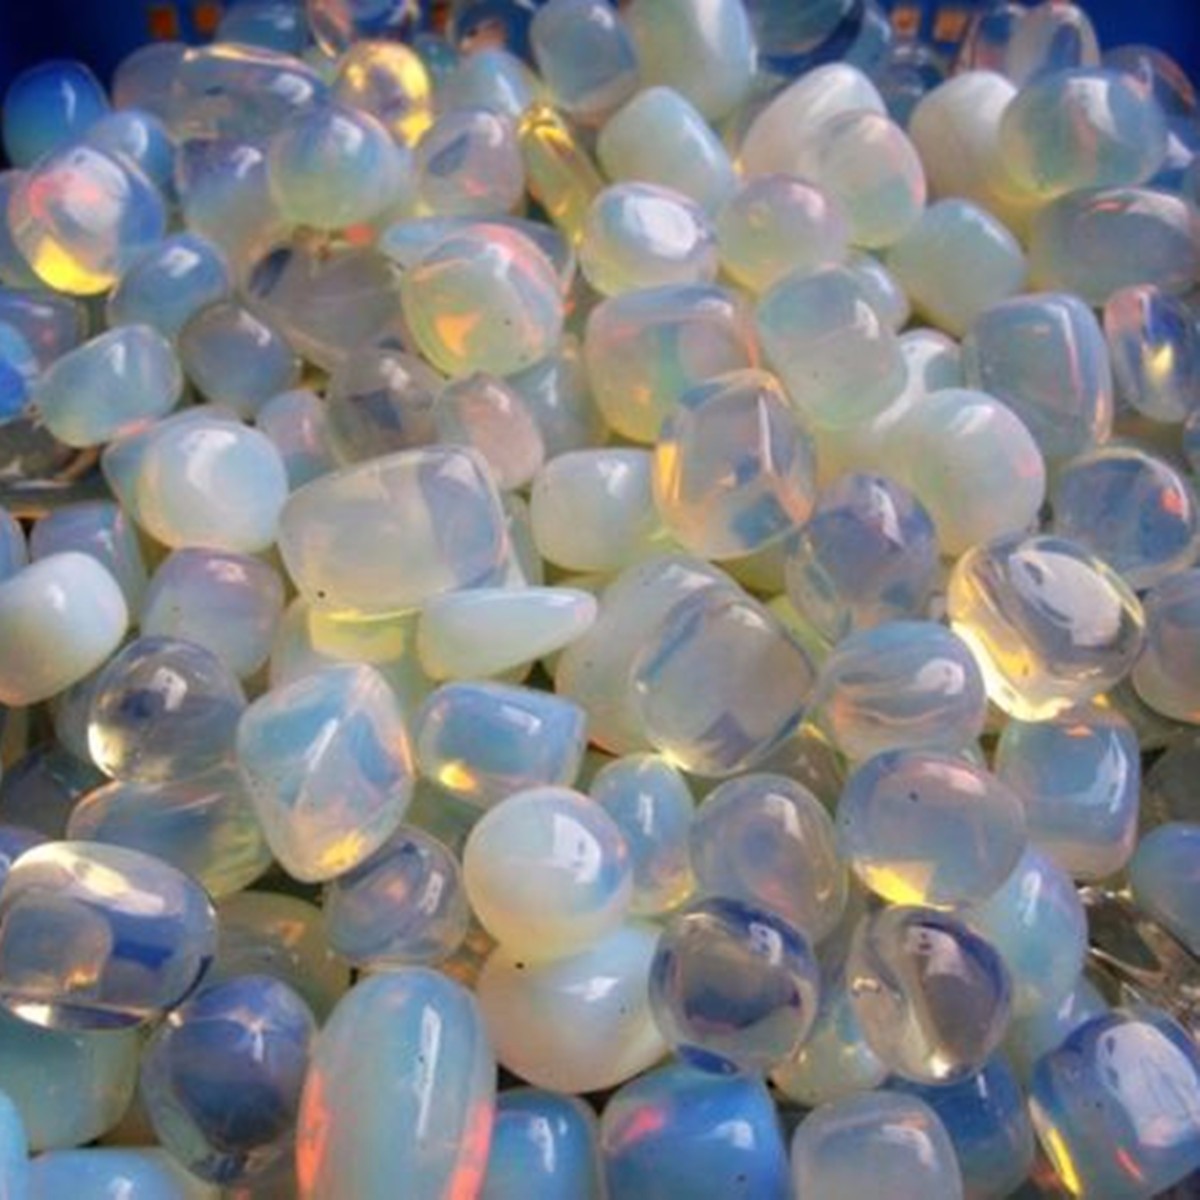 100g-9-12mm-Opal-Crystal-Particles-Stones-Healing-Quartz-Rock-Specimens-Accessories-1082851